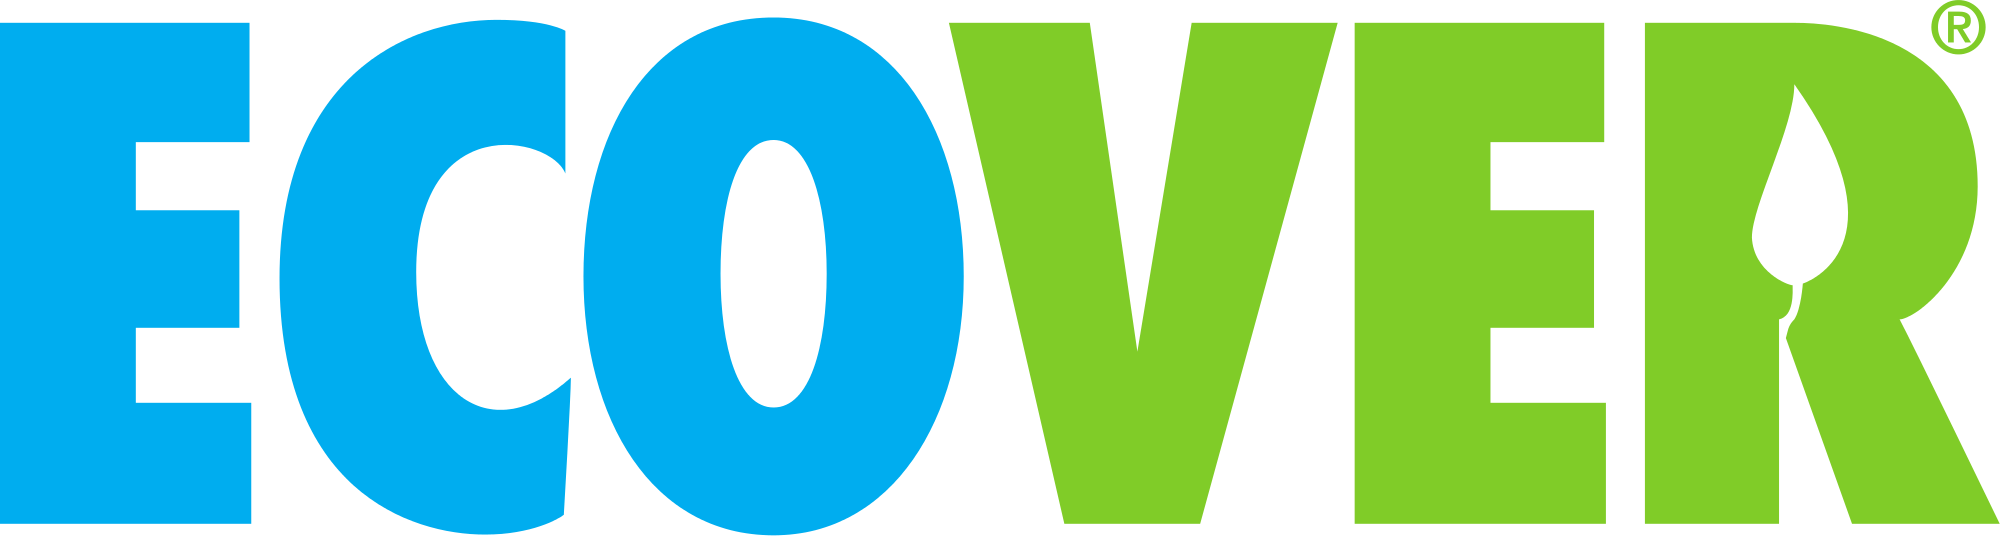 Ecover_Logo